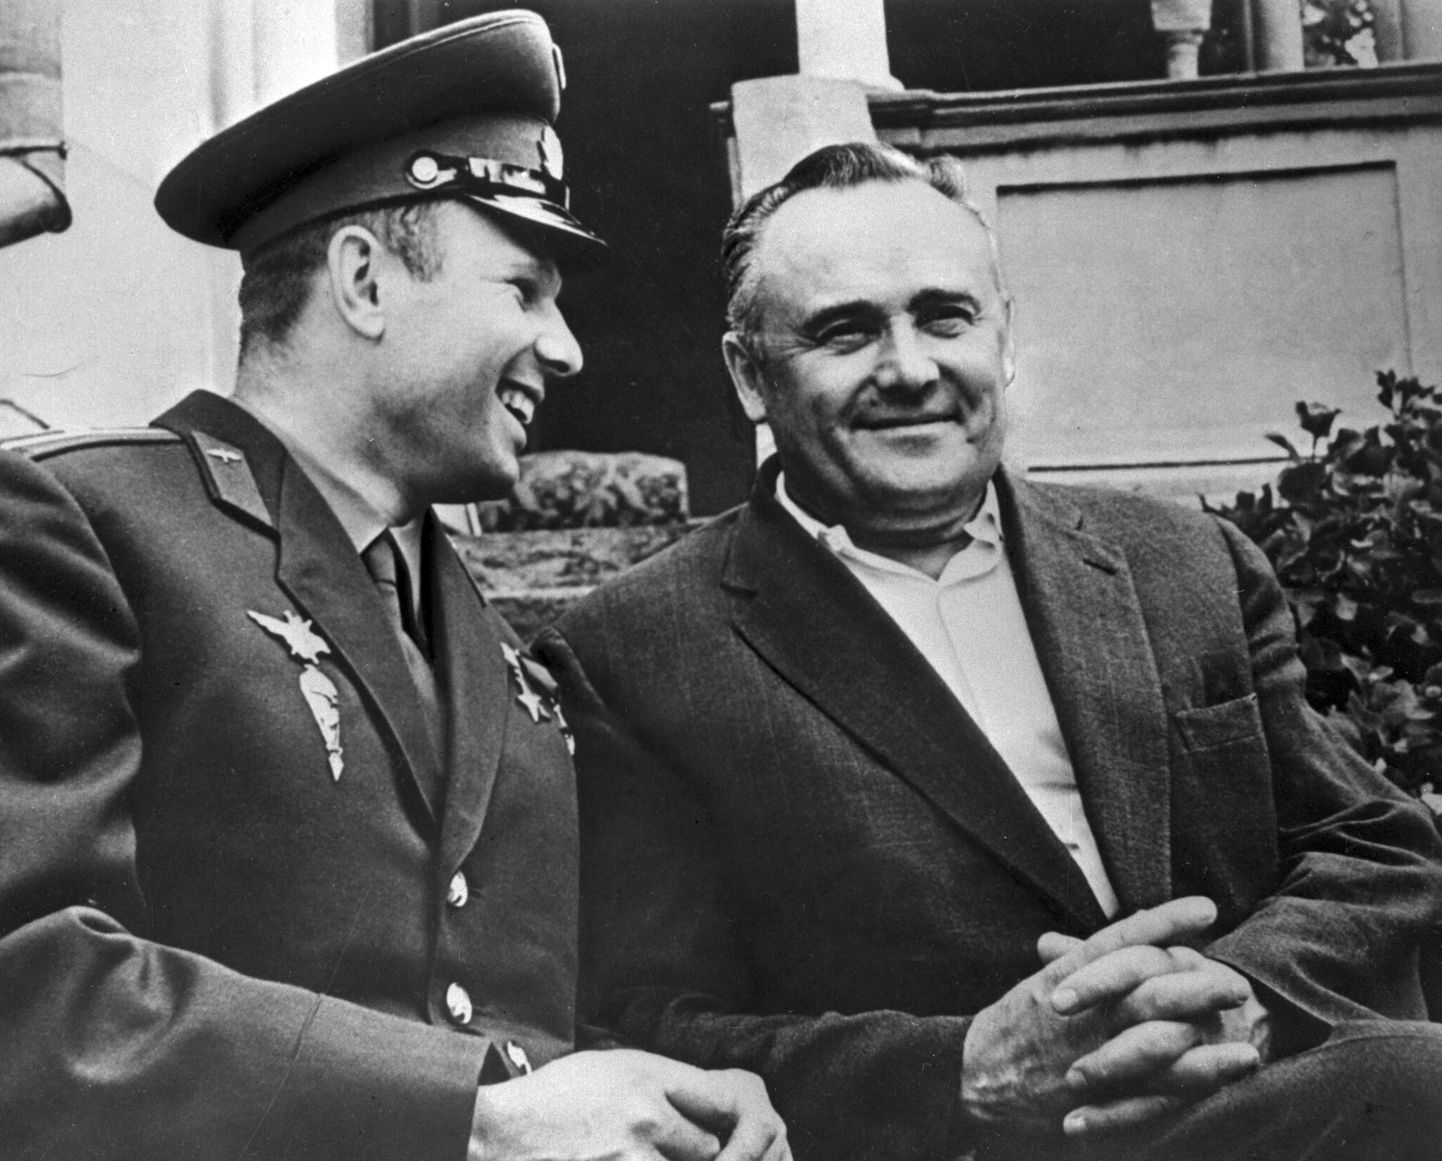 Esimene kosmonaut Juri Gagarin ja üks Nõukogude kosmoseprogrammi arendajaid Sergei Koroljov.